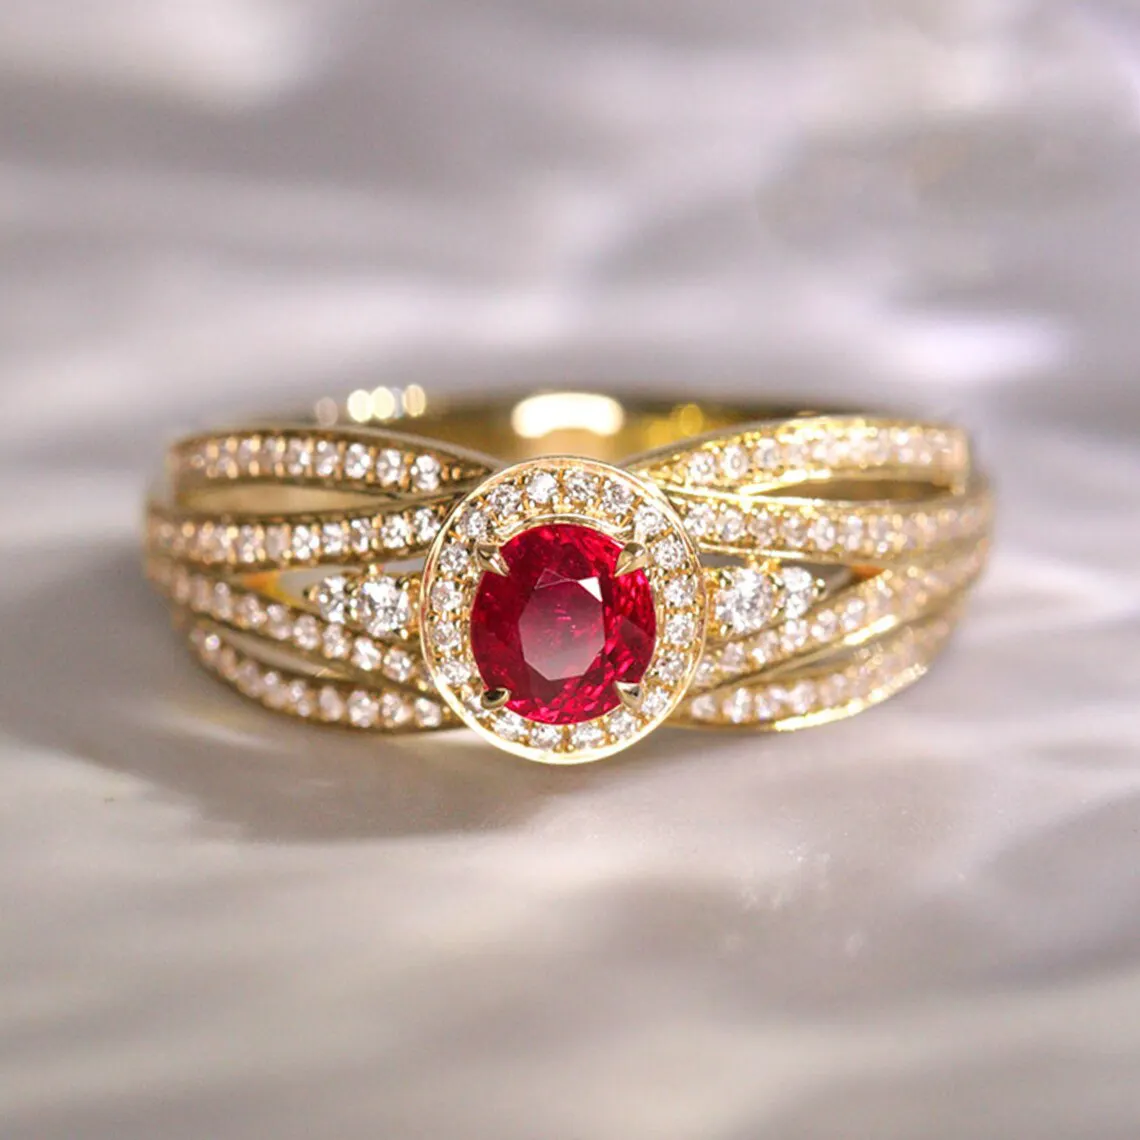 CAOSHI 18K Banhado A Ouro Rubi Pedra Vermelha de Cristal Wedding Band para As Mulheres Oval Cut Luxury Design Anéis para Festa Jóias